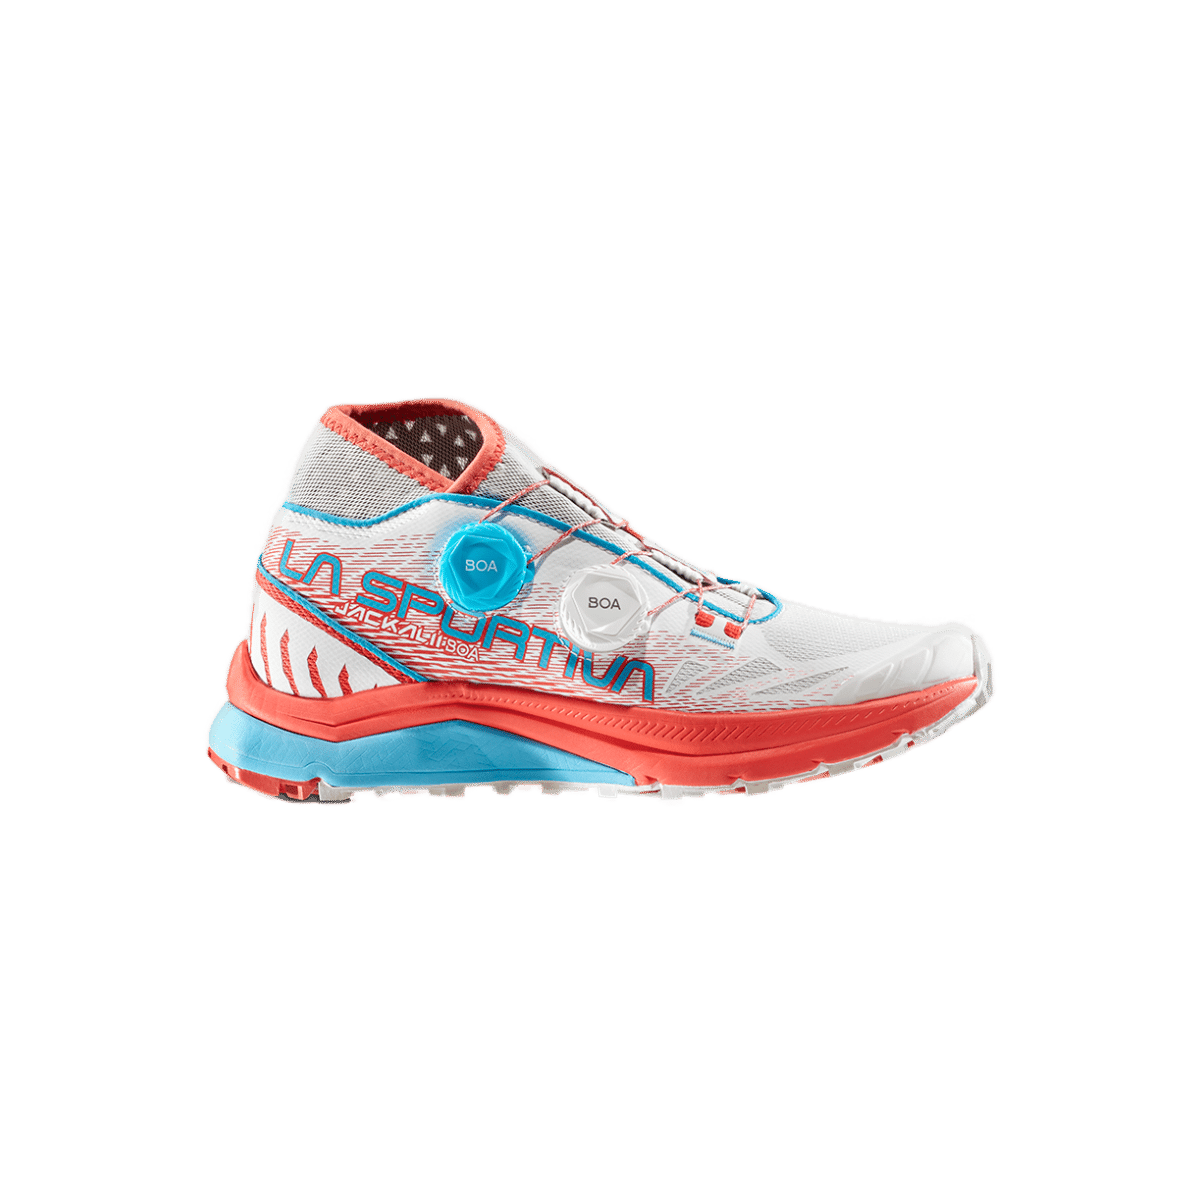 La Sportiva Women's Jackal II BOA Trail Running Shoes – Capra 